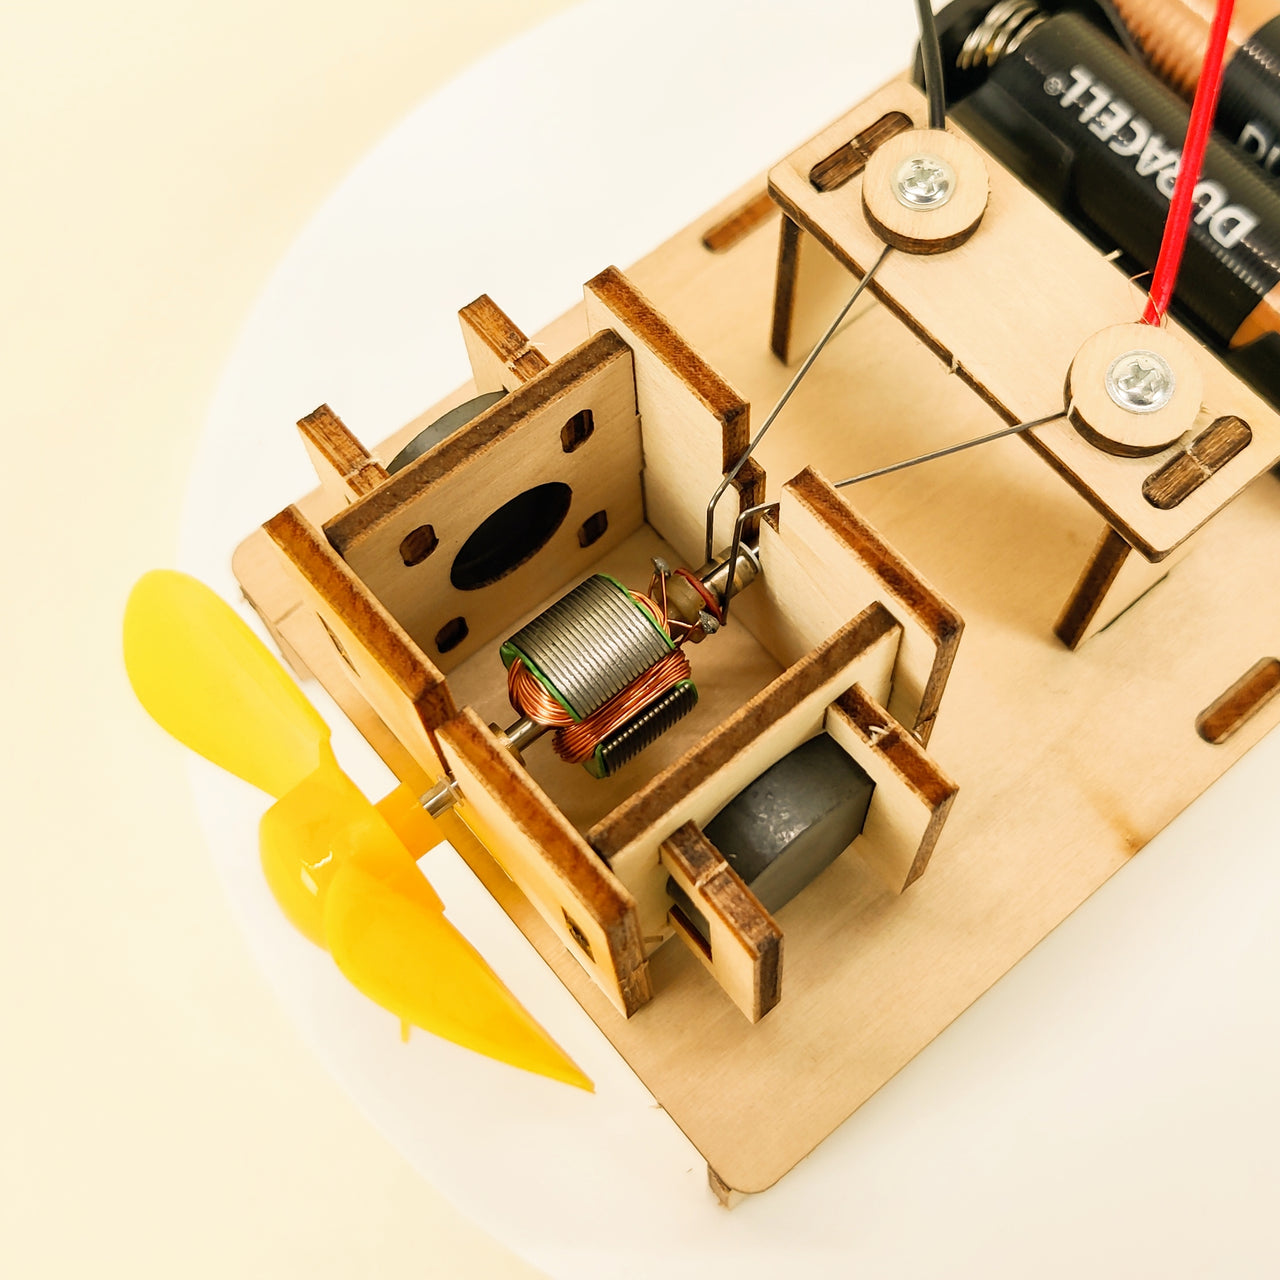 Kit de bricolage pour moteur électrique CreateKit